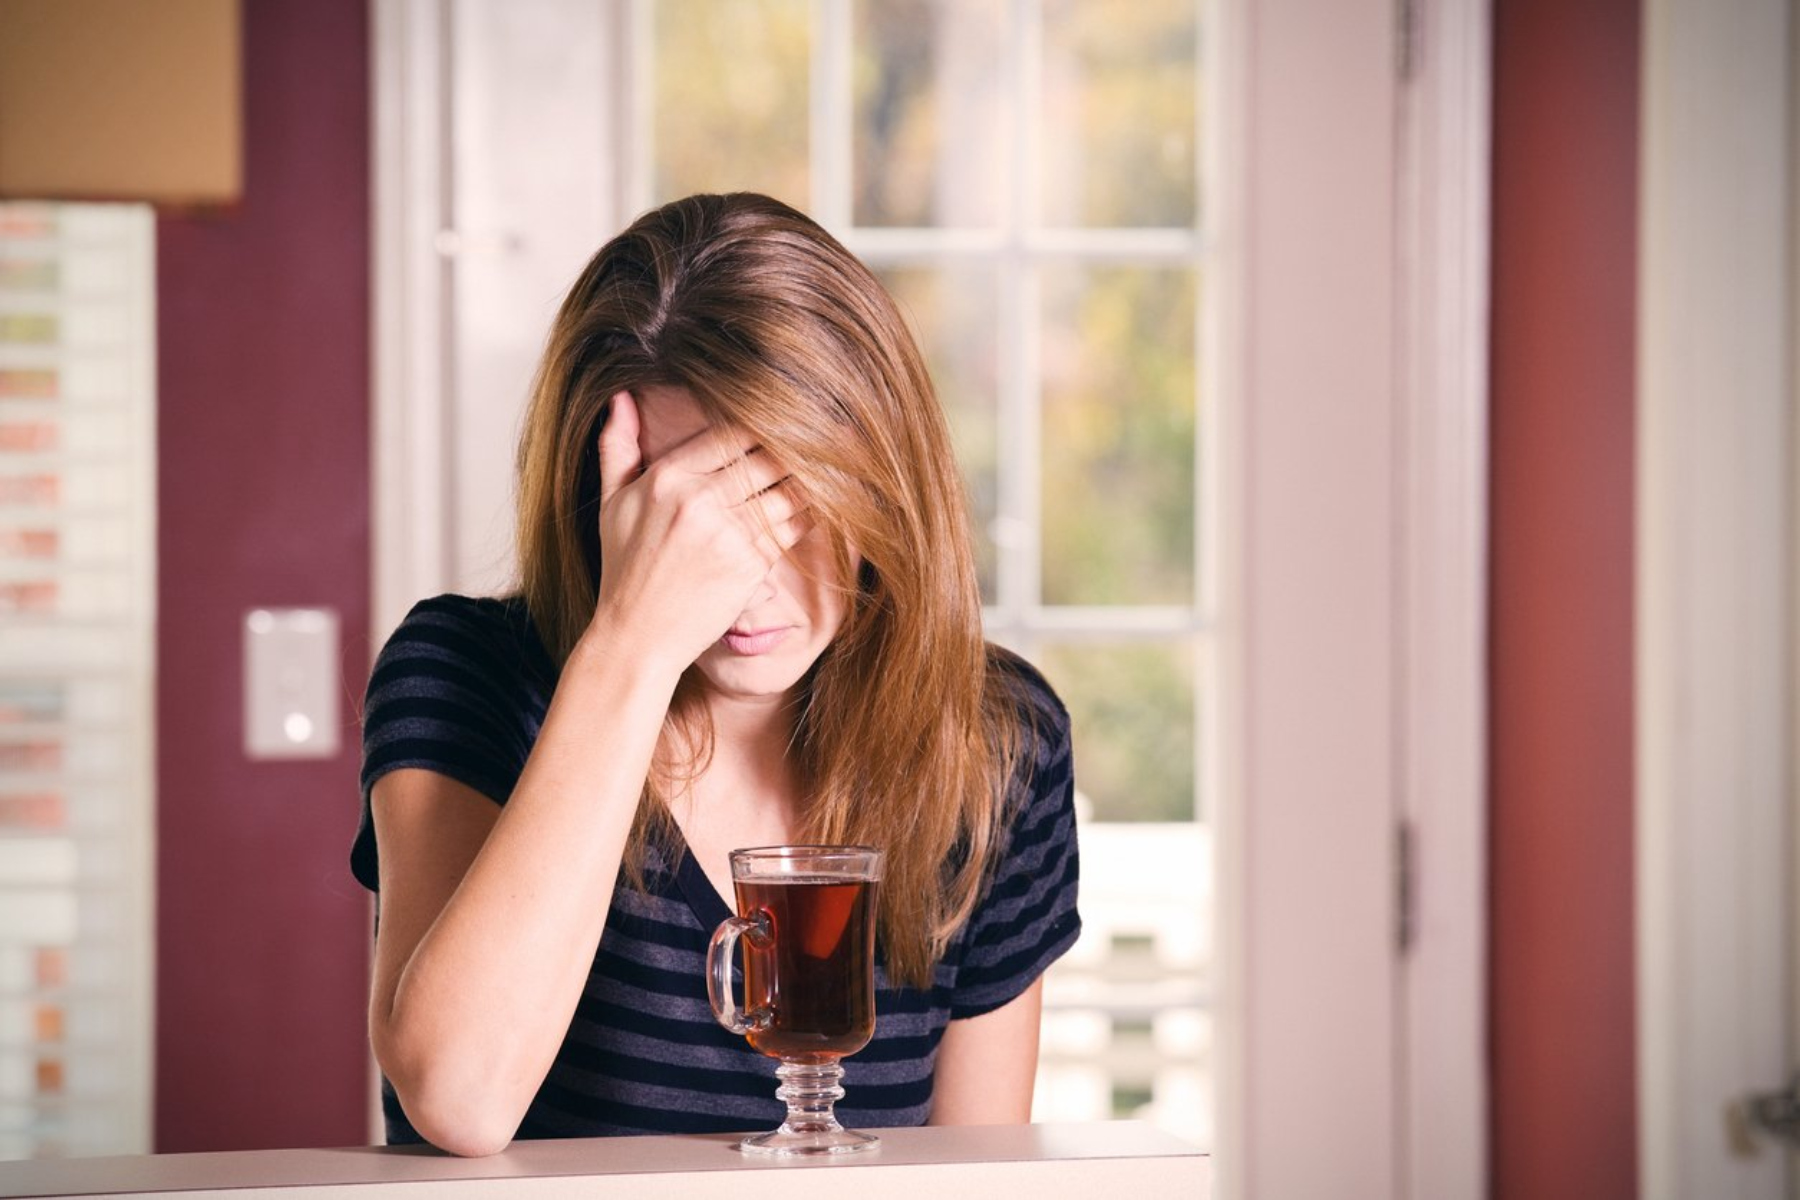 Αλκοόλ: Πώς το αλκοόλ δημιουργεί προβλήματα στην ψυχική μας υγεία;